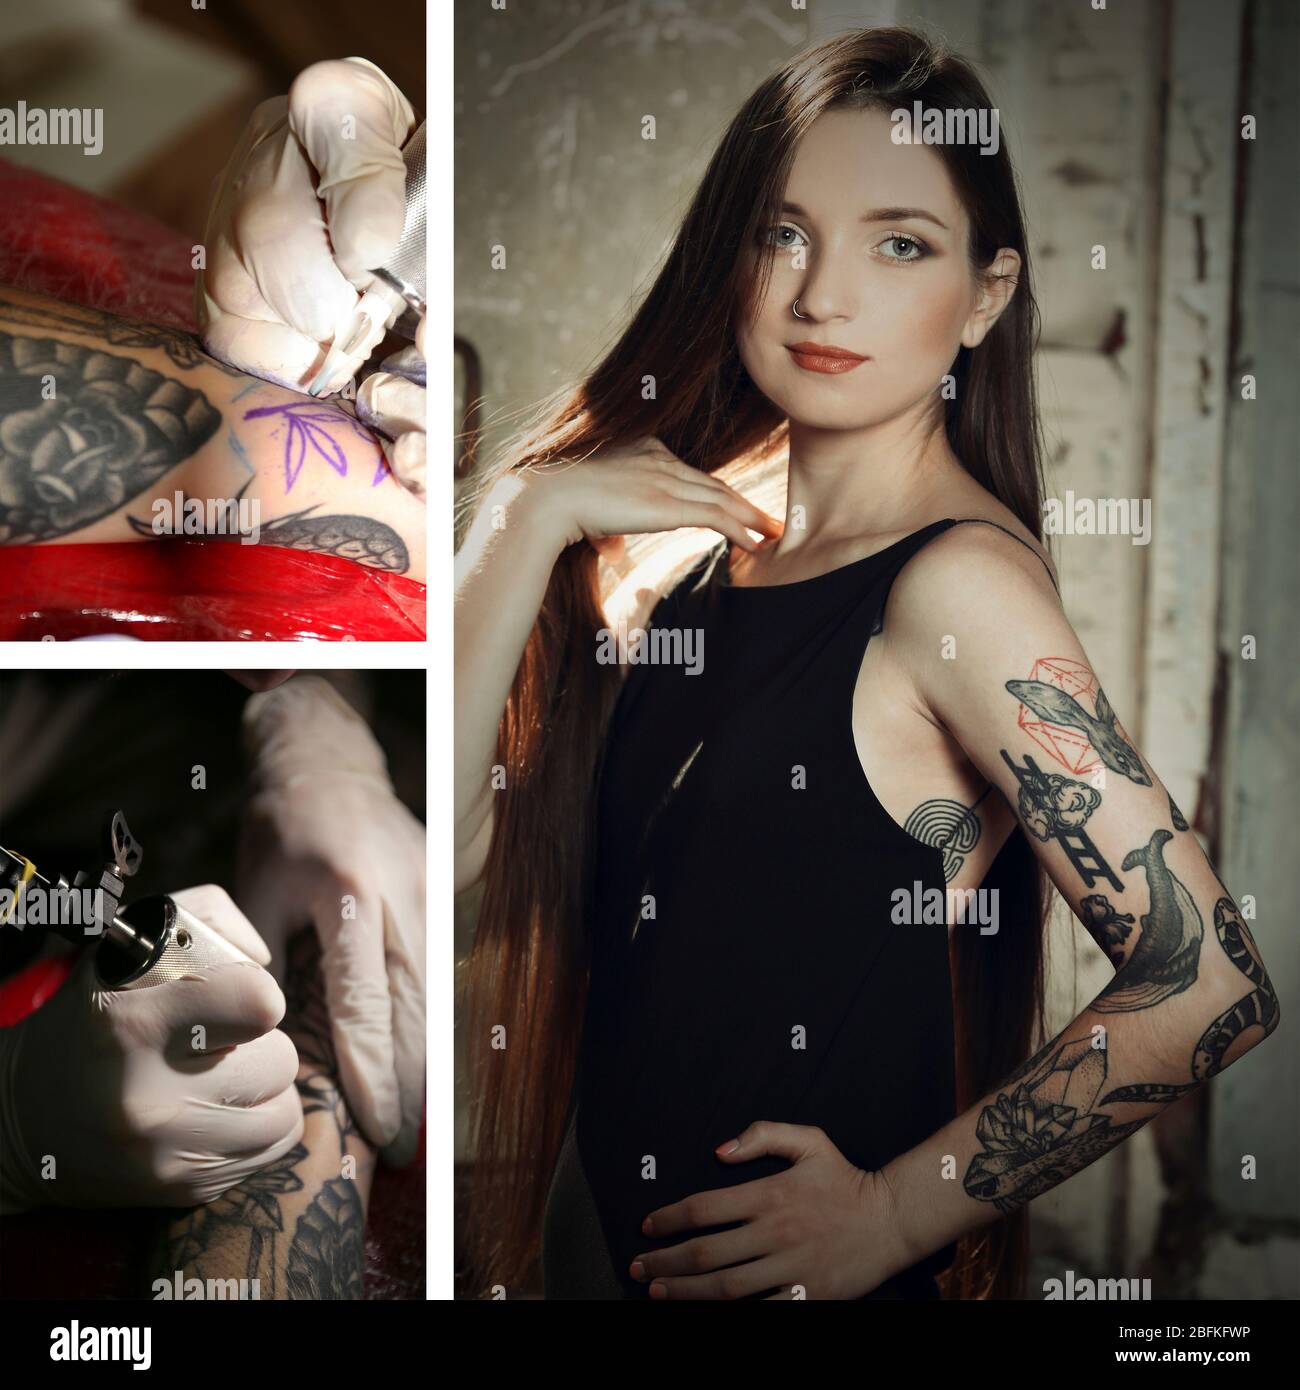 TOM araya tattoo | Slayer tattoo, Tattoos, Heavy metal music